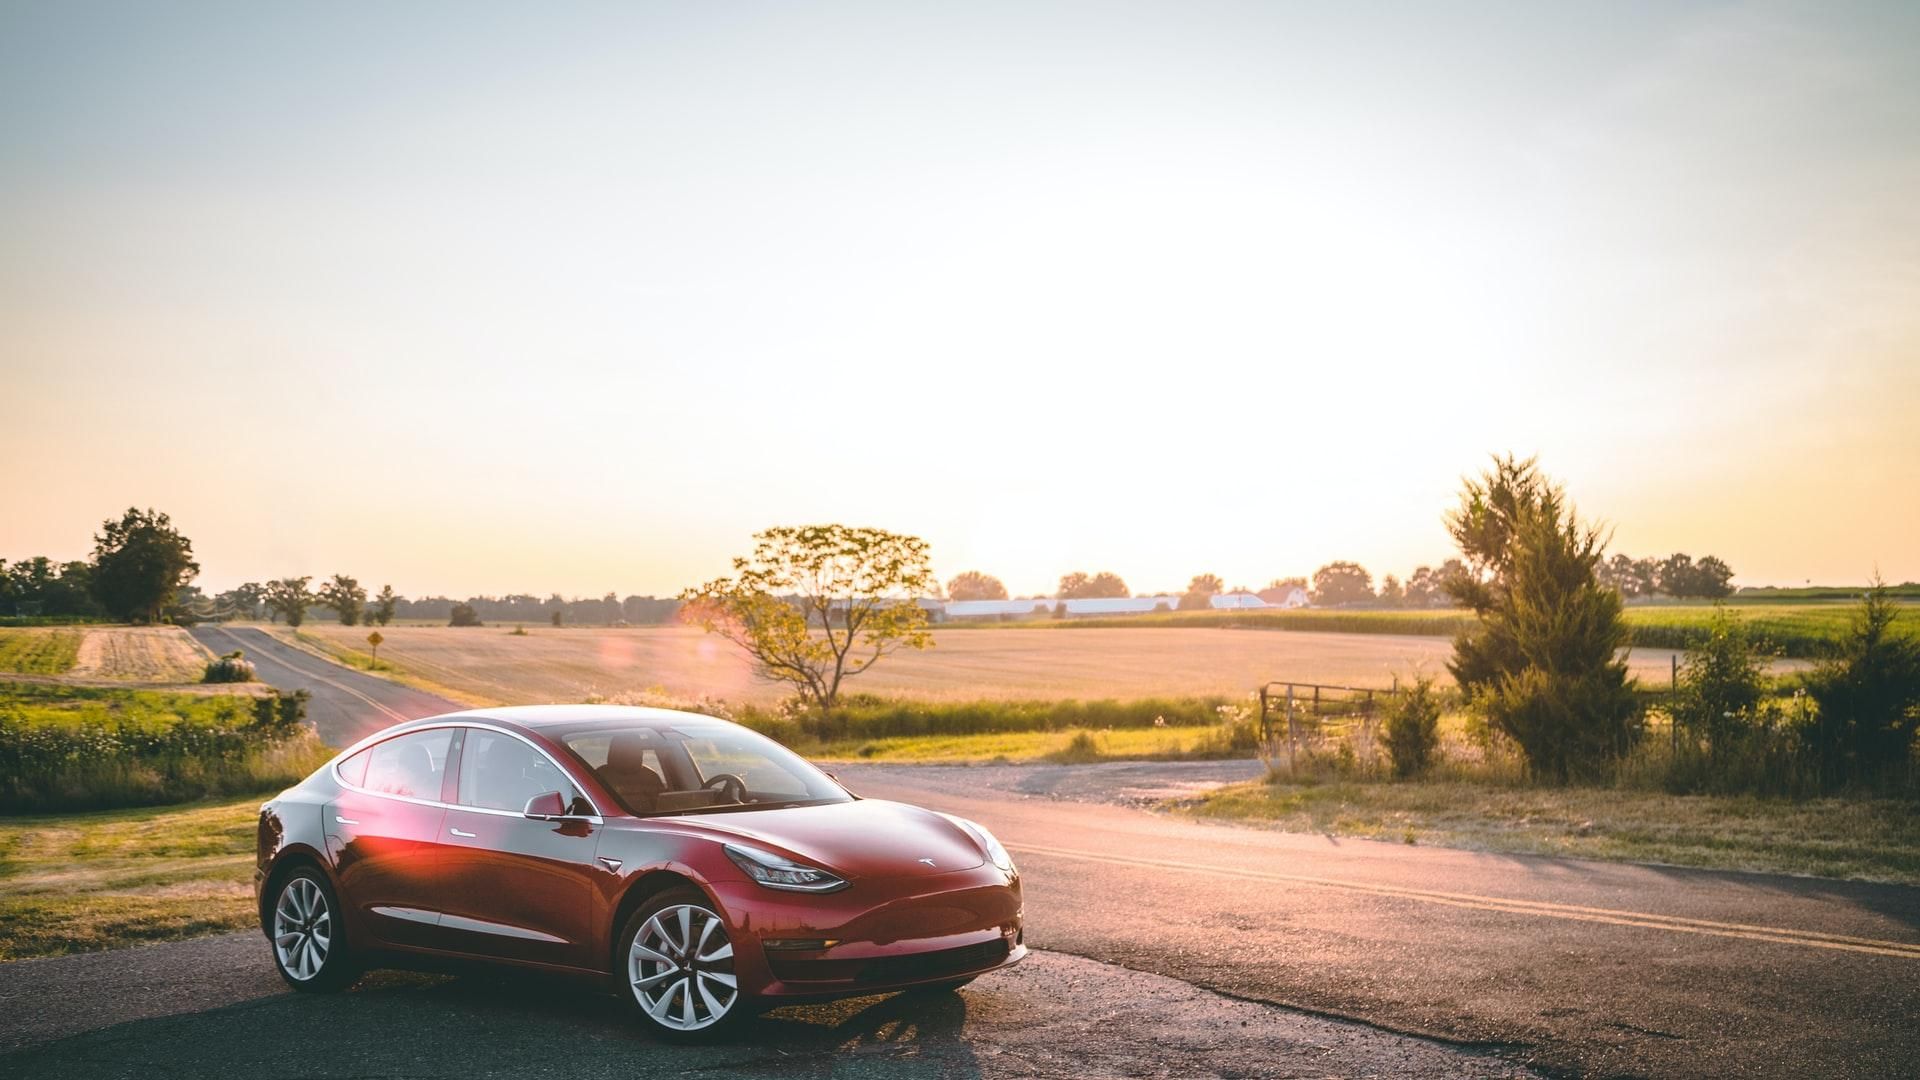 Tesla Model 3 на автопілоті врізалась у патрульне авто - Новини технологій - Техно